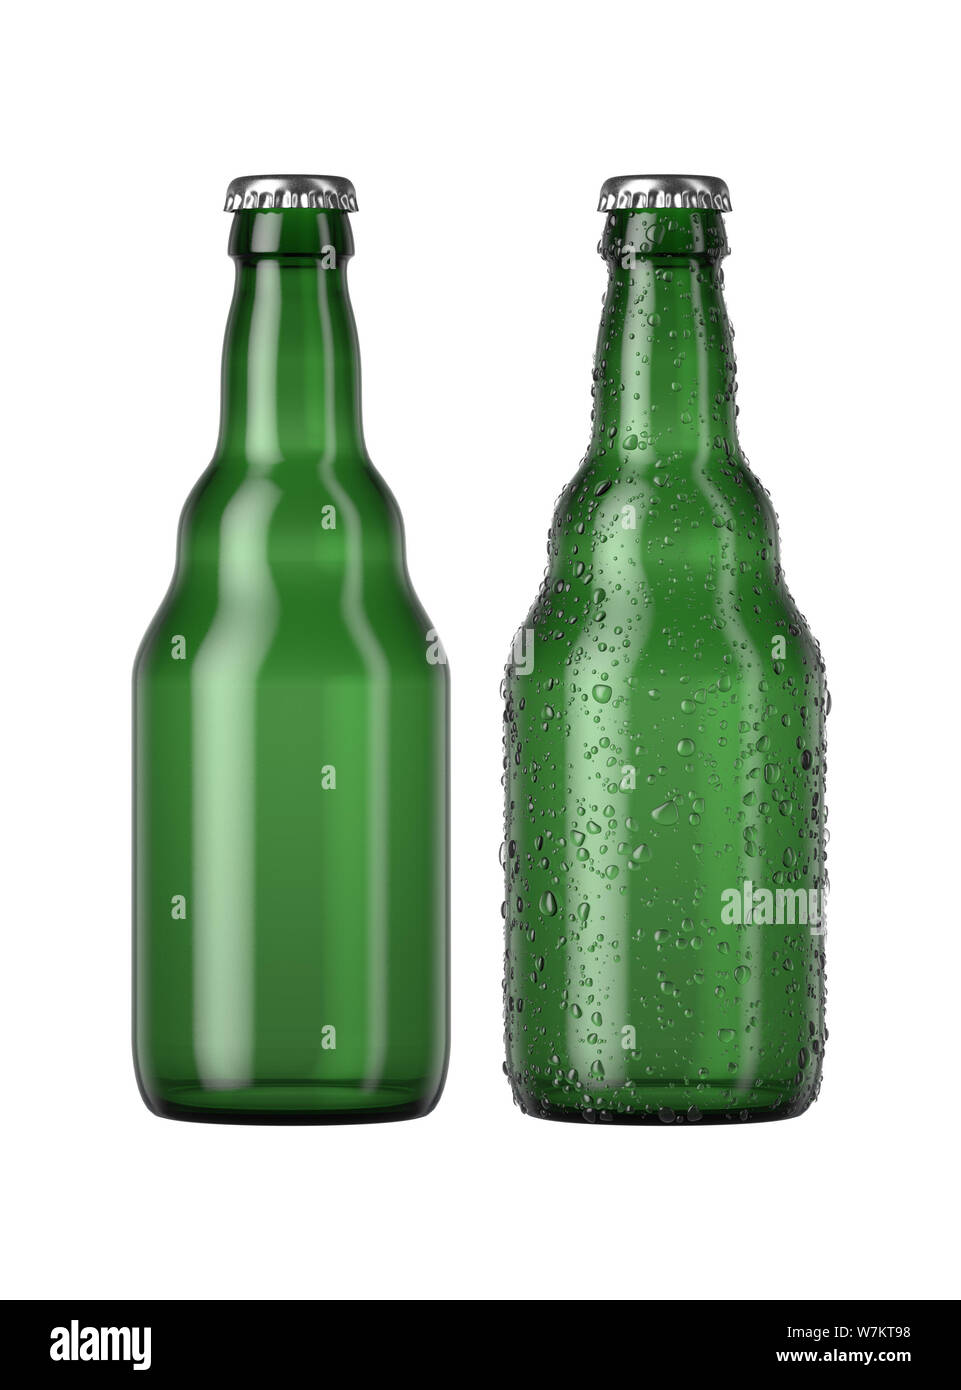 Ein schlichtes grünes Glas Bier Flasche neben einem anderen mit Tröpfchen von Kondensation auf einer isolierten weißen studio Hintergrund - 3D-Rendering Stockfoto